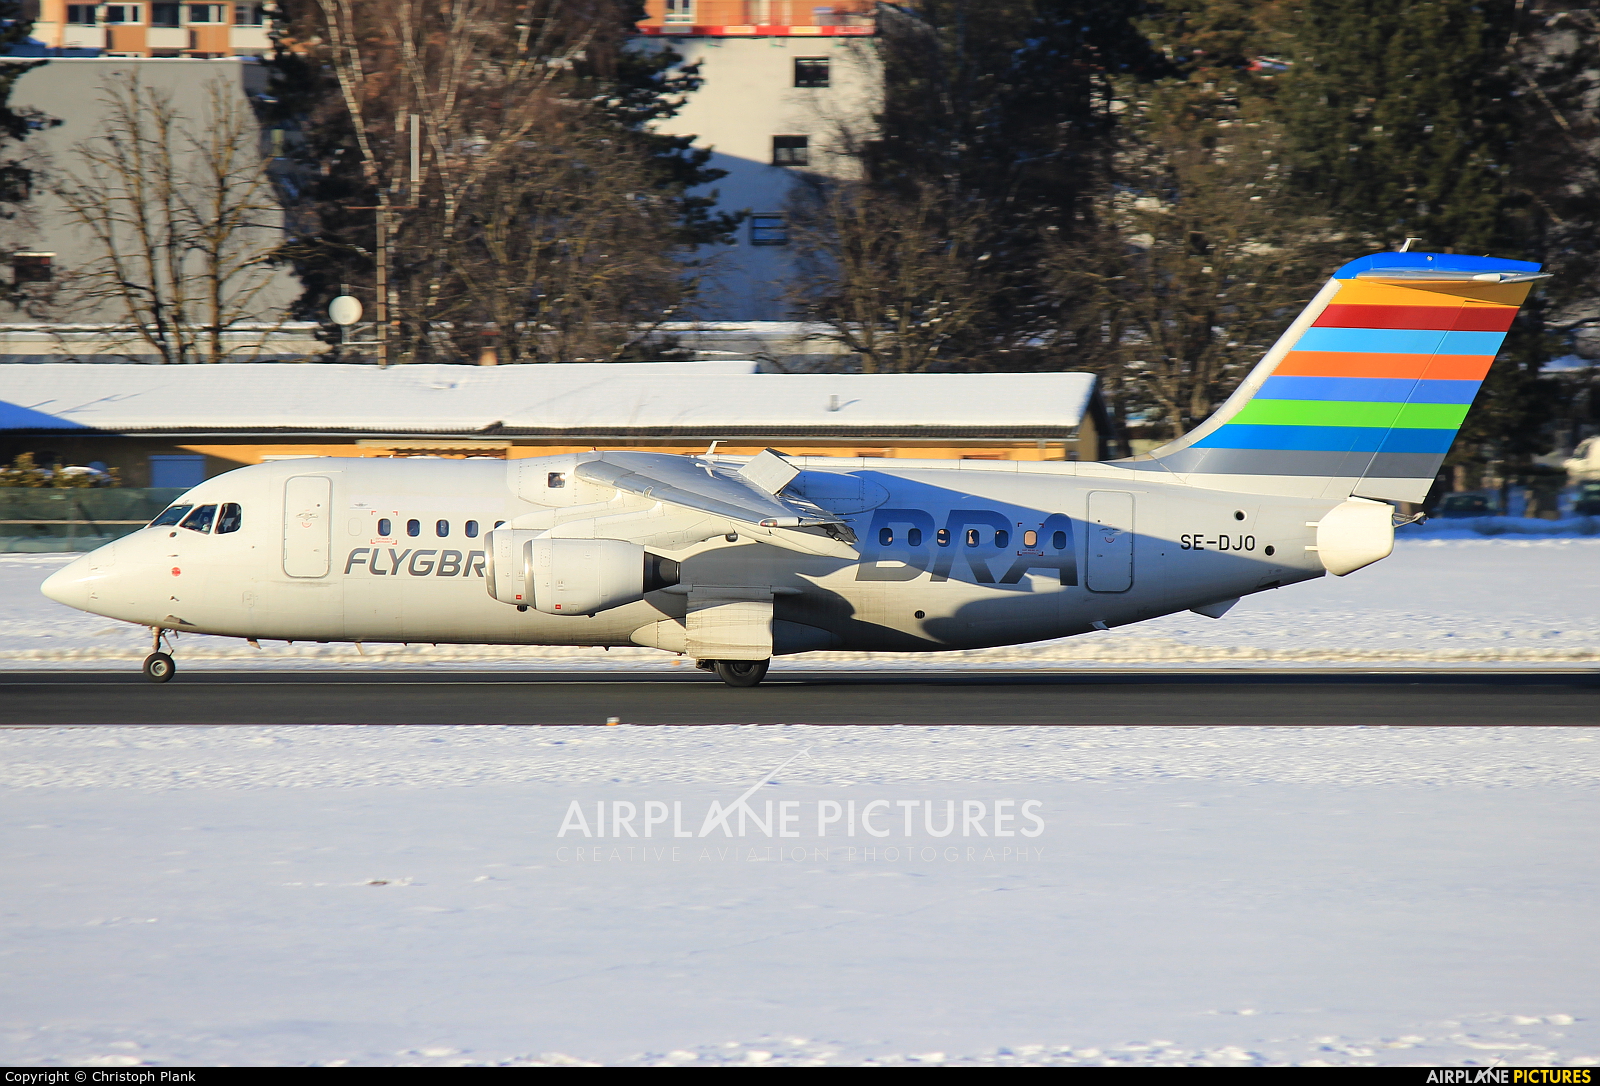 BRA (Sweden) SE-DJO aircraft at Innsbruck